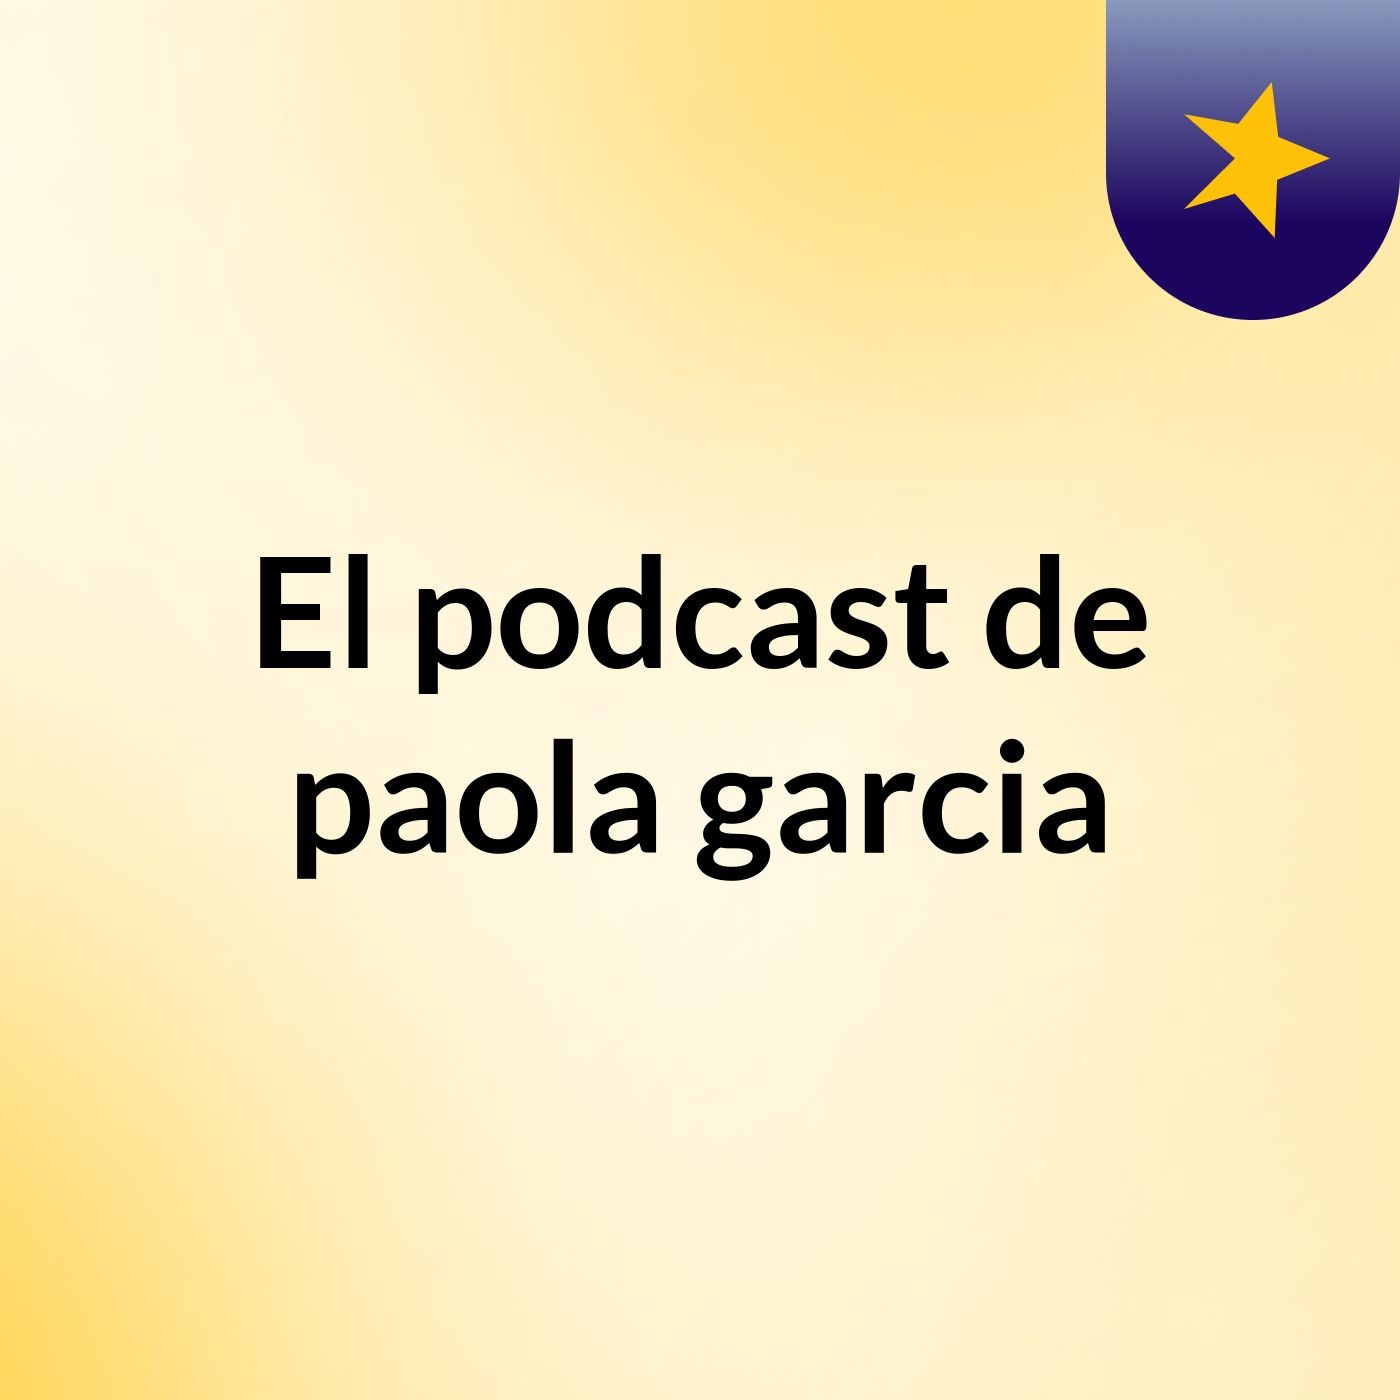 El podcast de paola garcia